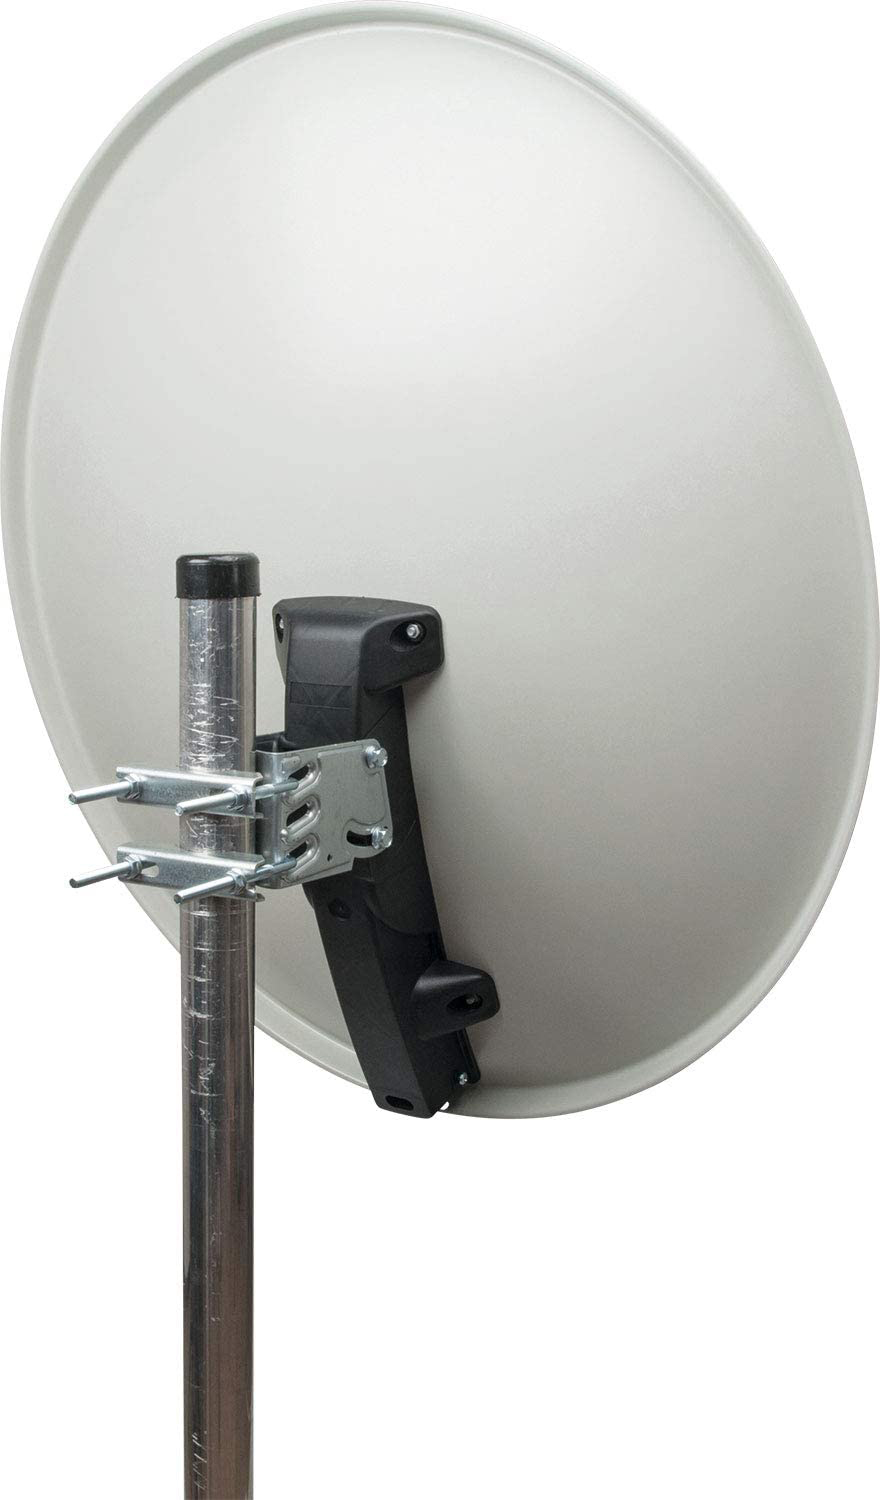 SCHWAIGER Stahl -SPI996.0- cm) (75 Antenne Offset